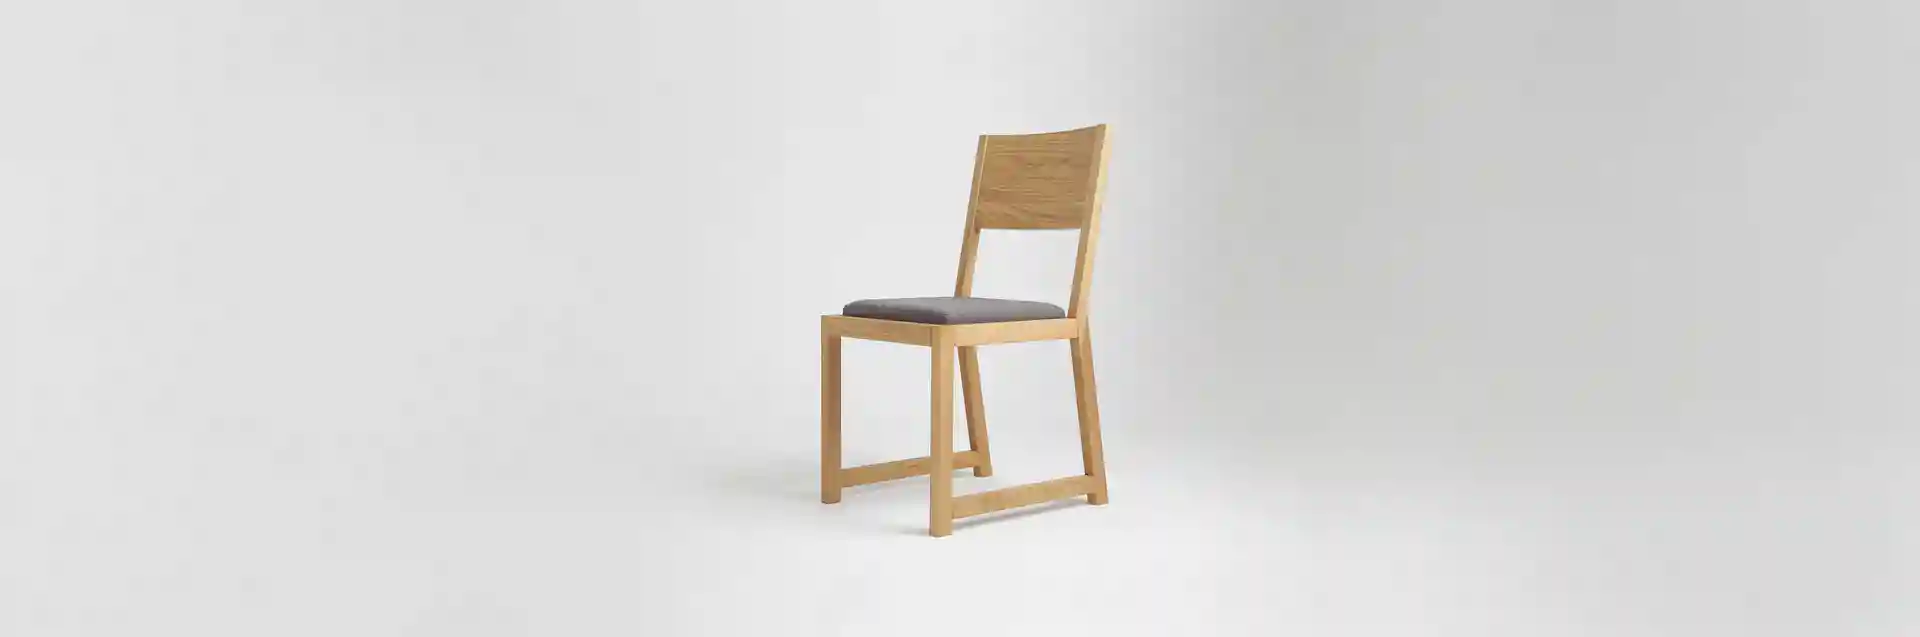 Krzesło drewniane MILONI FRAME, Kolor: 03: Natural tapicerowane, Wymiary: Dł: 45 x Sz: 44 x Wys: 45 cm, polskie krzesła z drewna, drewniane krzesło, dębowe krzesła